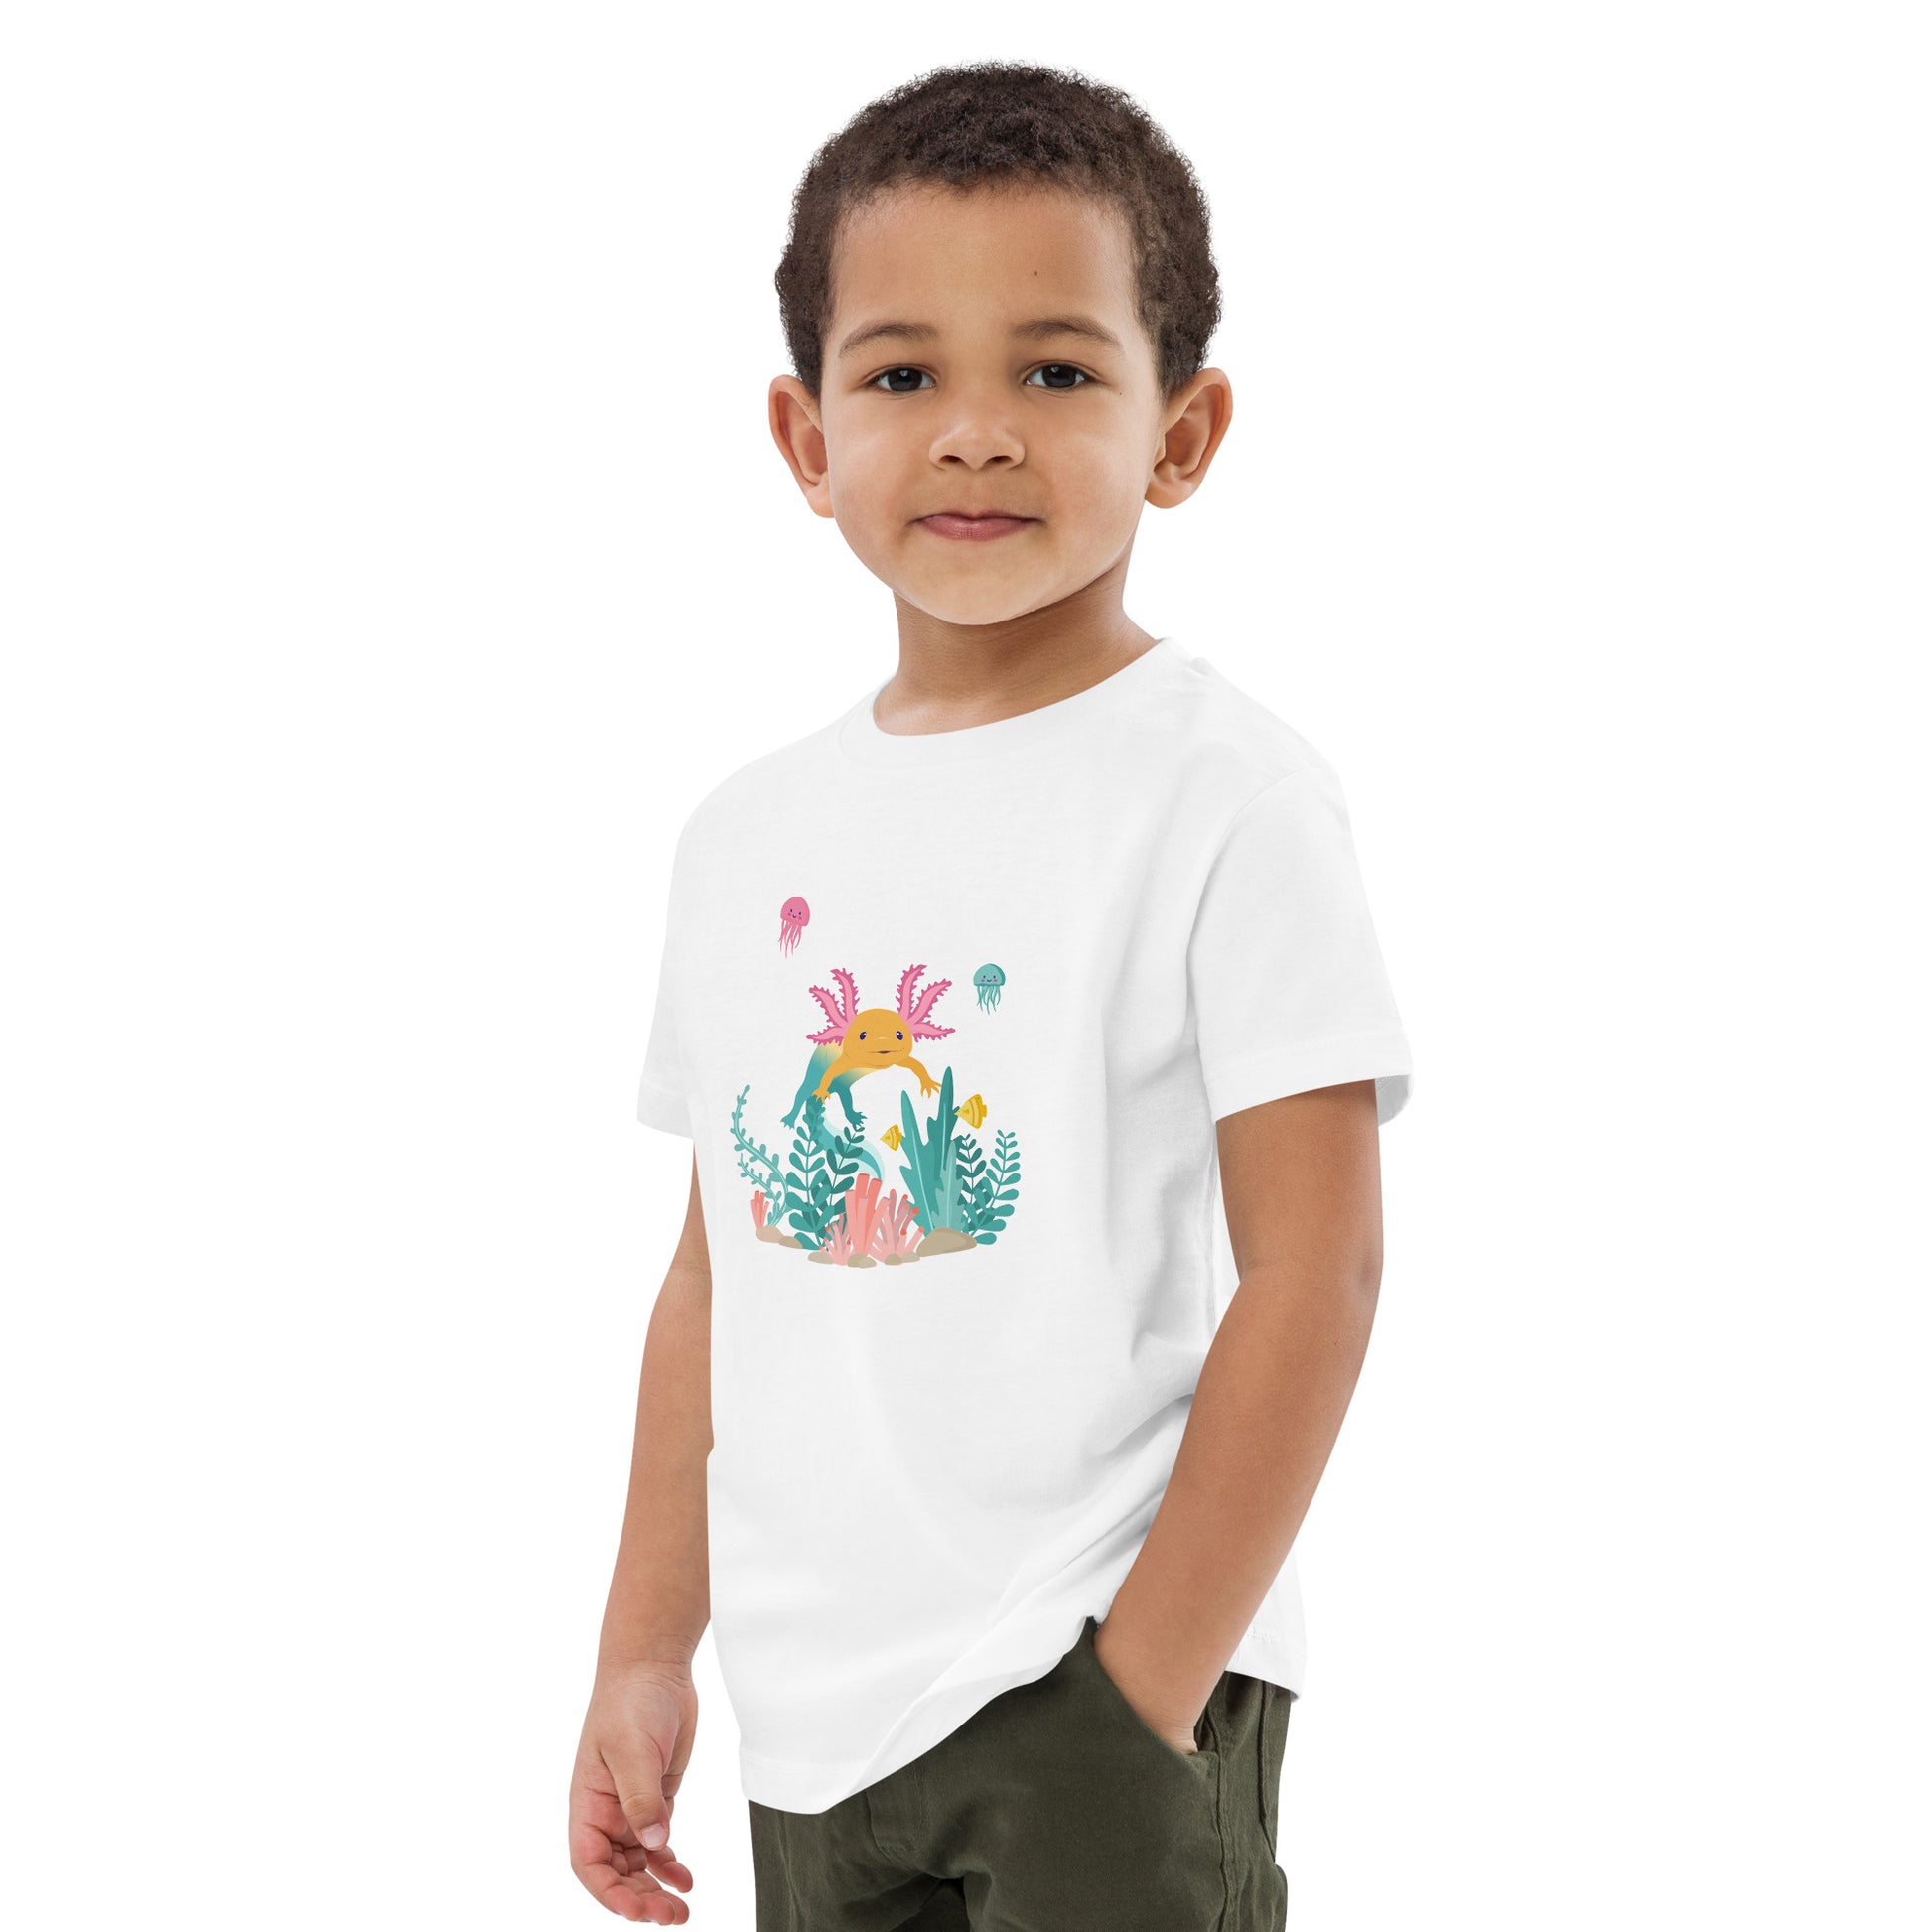 Barn T-shirt i färgen vit. Ekologisk bomull och tryck med axolotlen Axis i bottenmiljö.